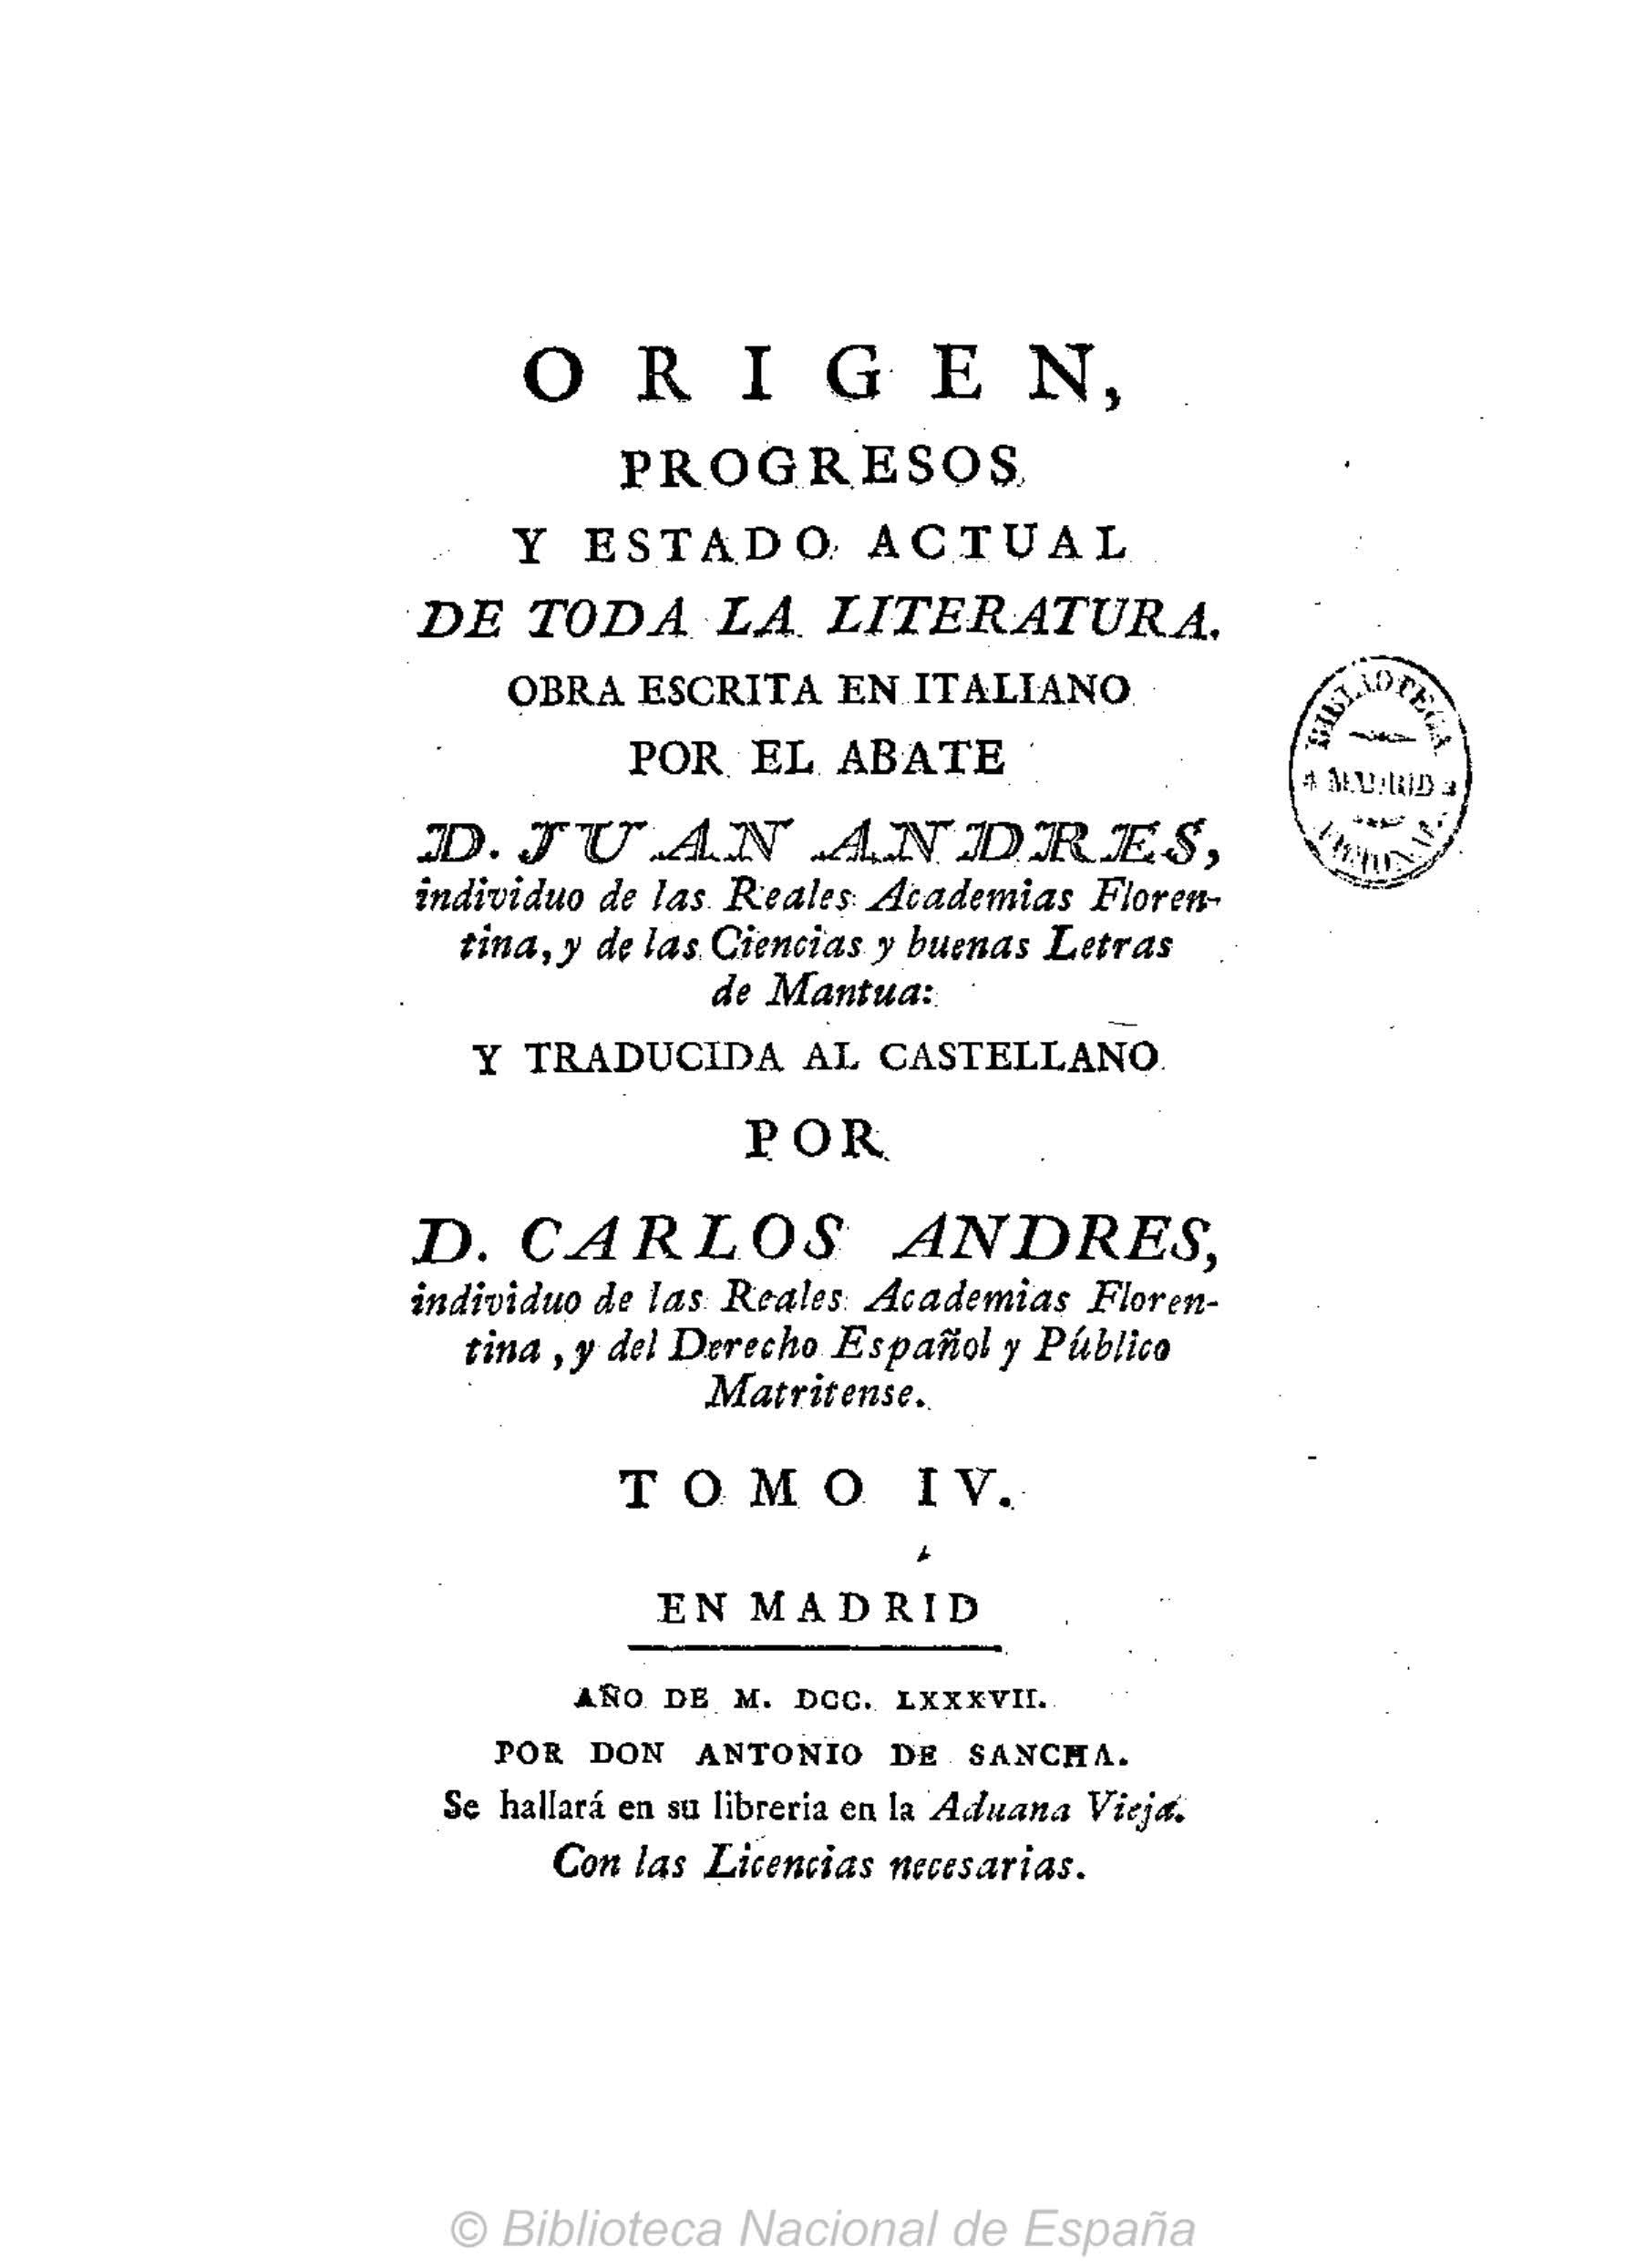 Origen, progresos y estado actual de toda la literatura, Tomo IV